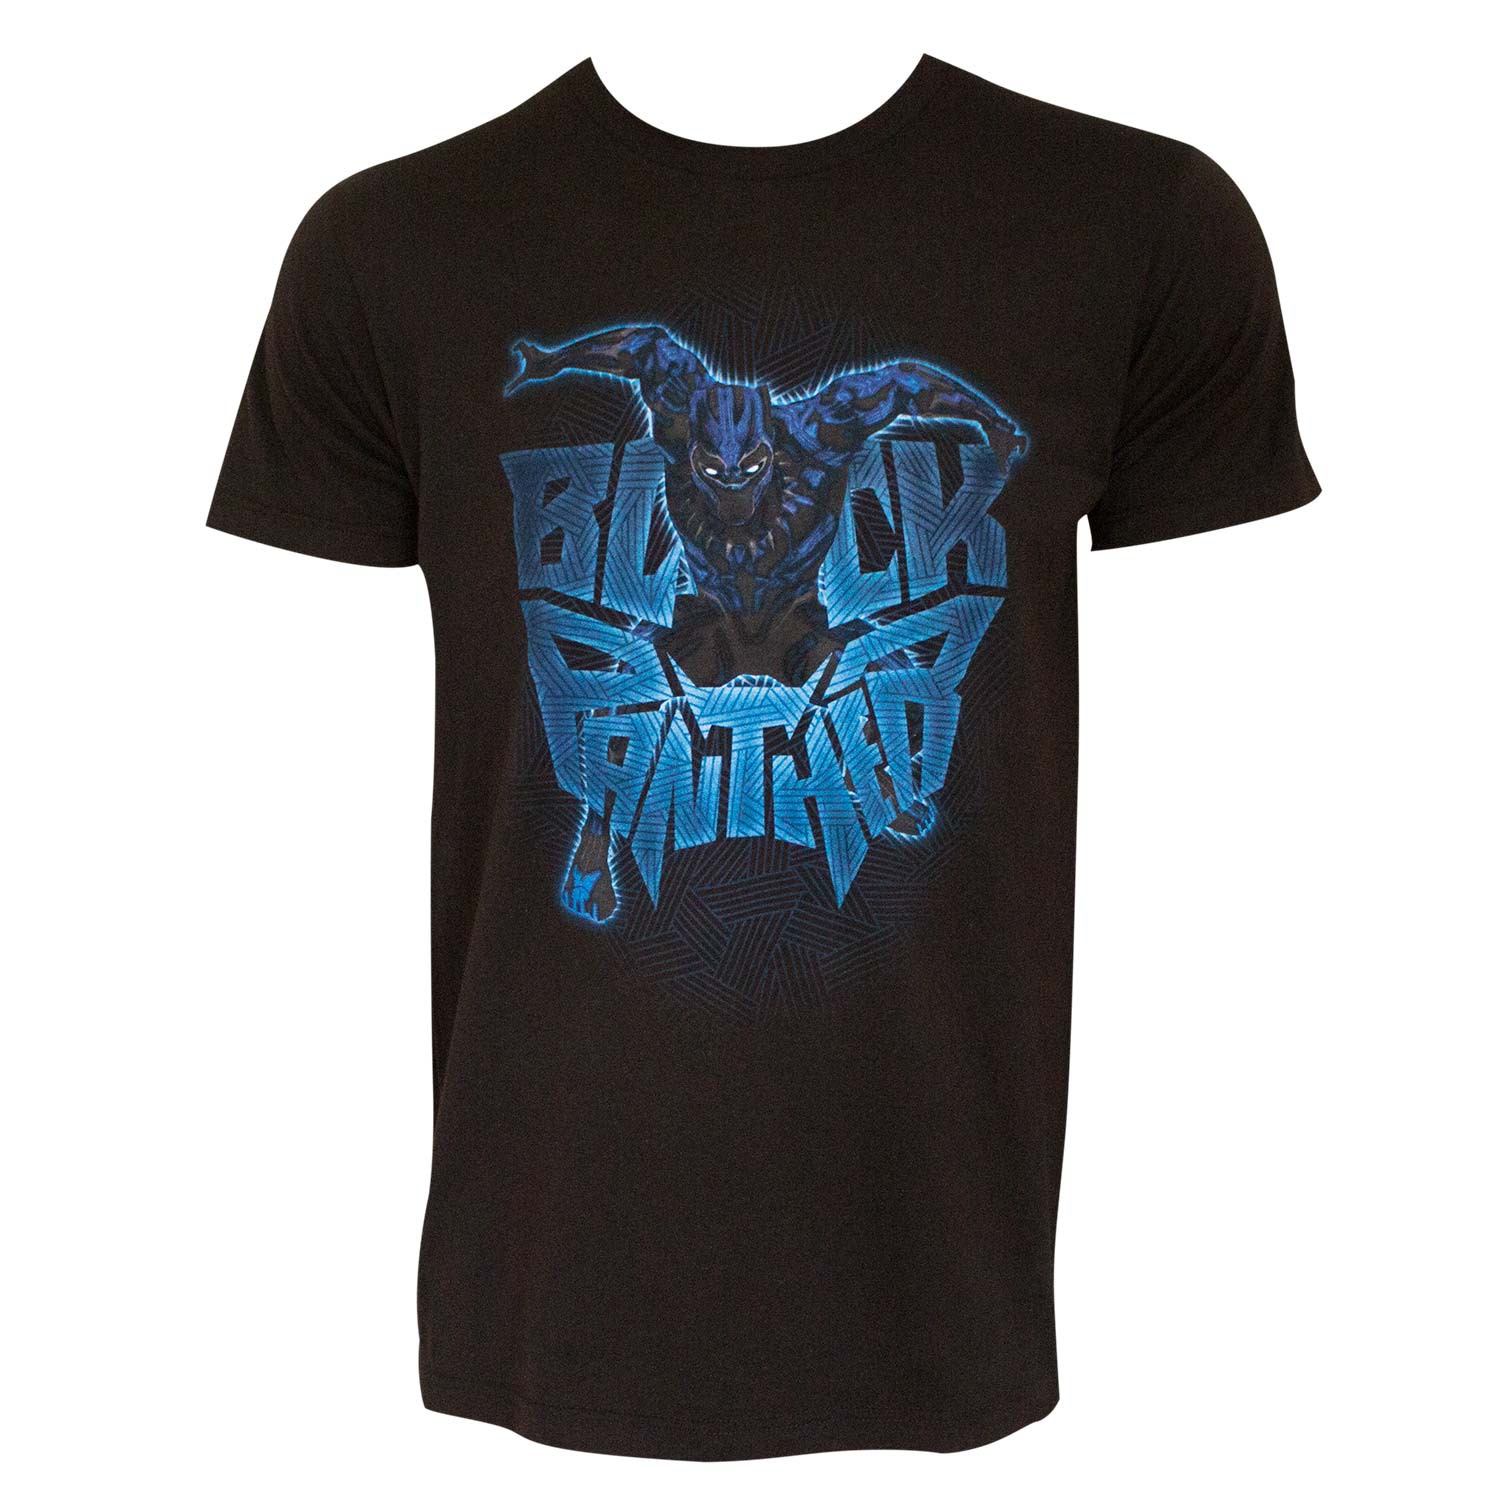 Black Panther Attack Logo Black Tee Shirt